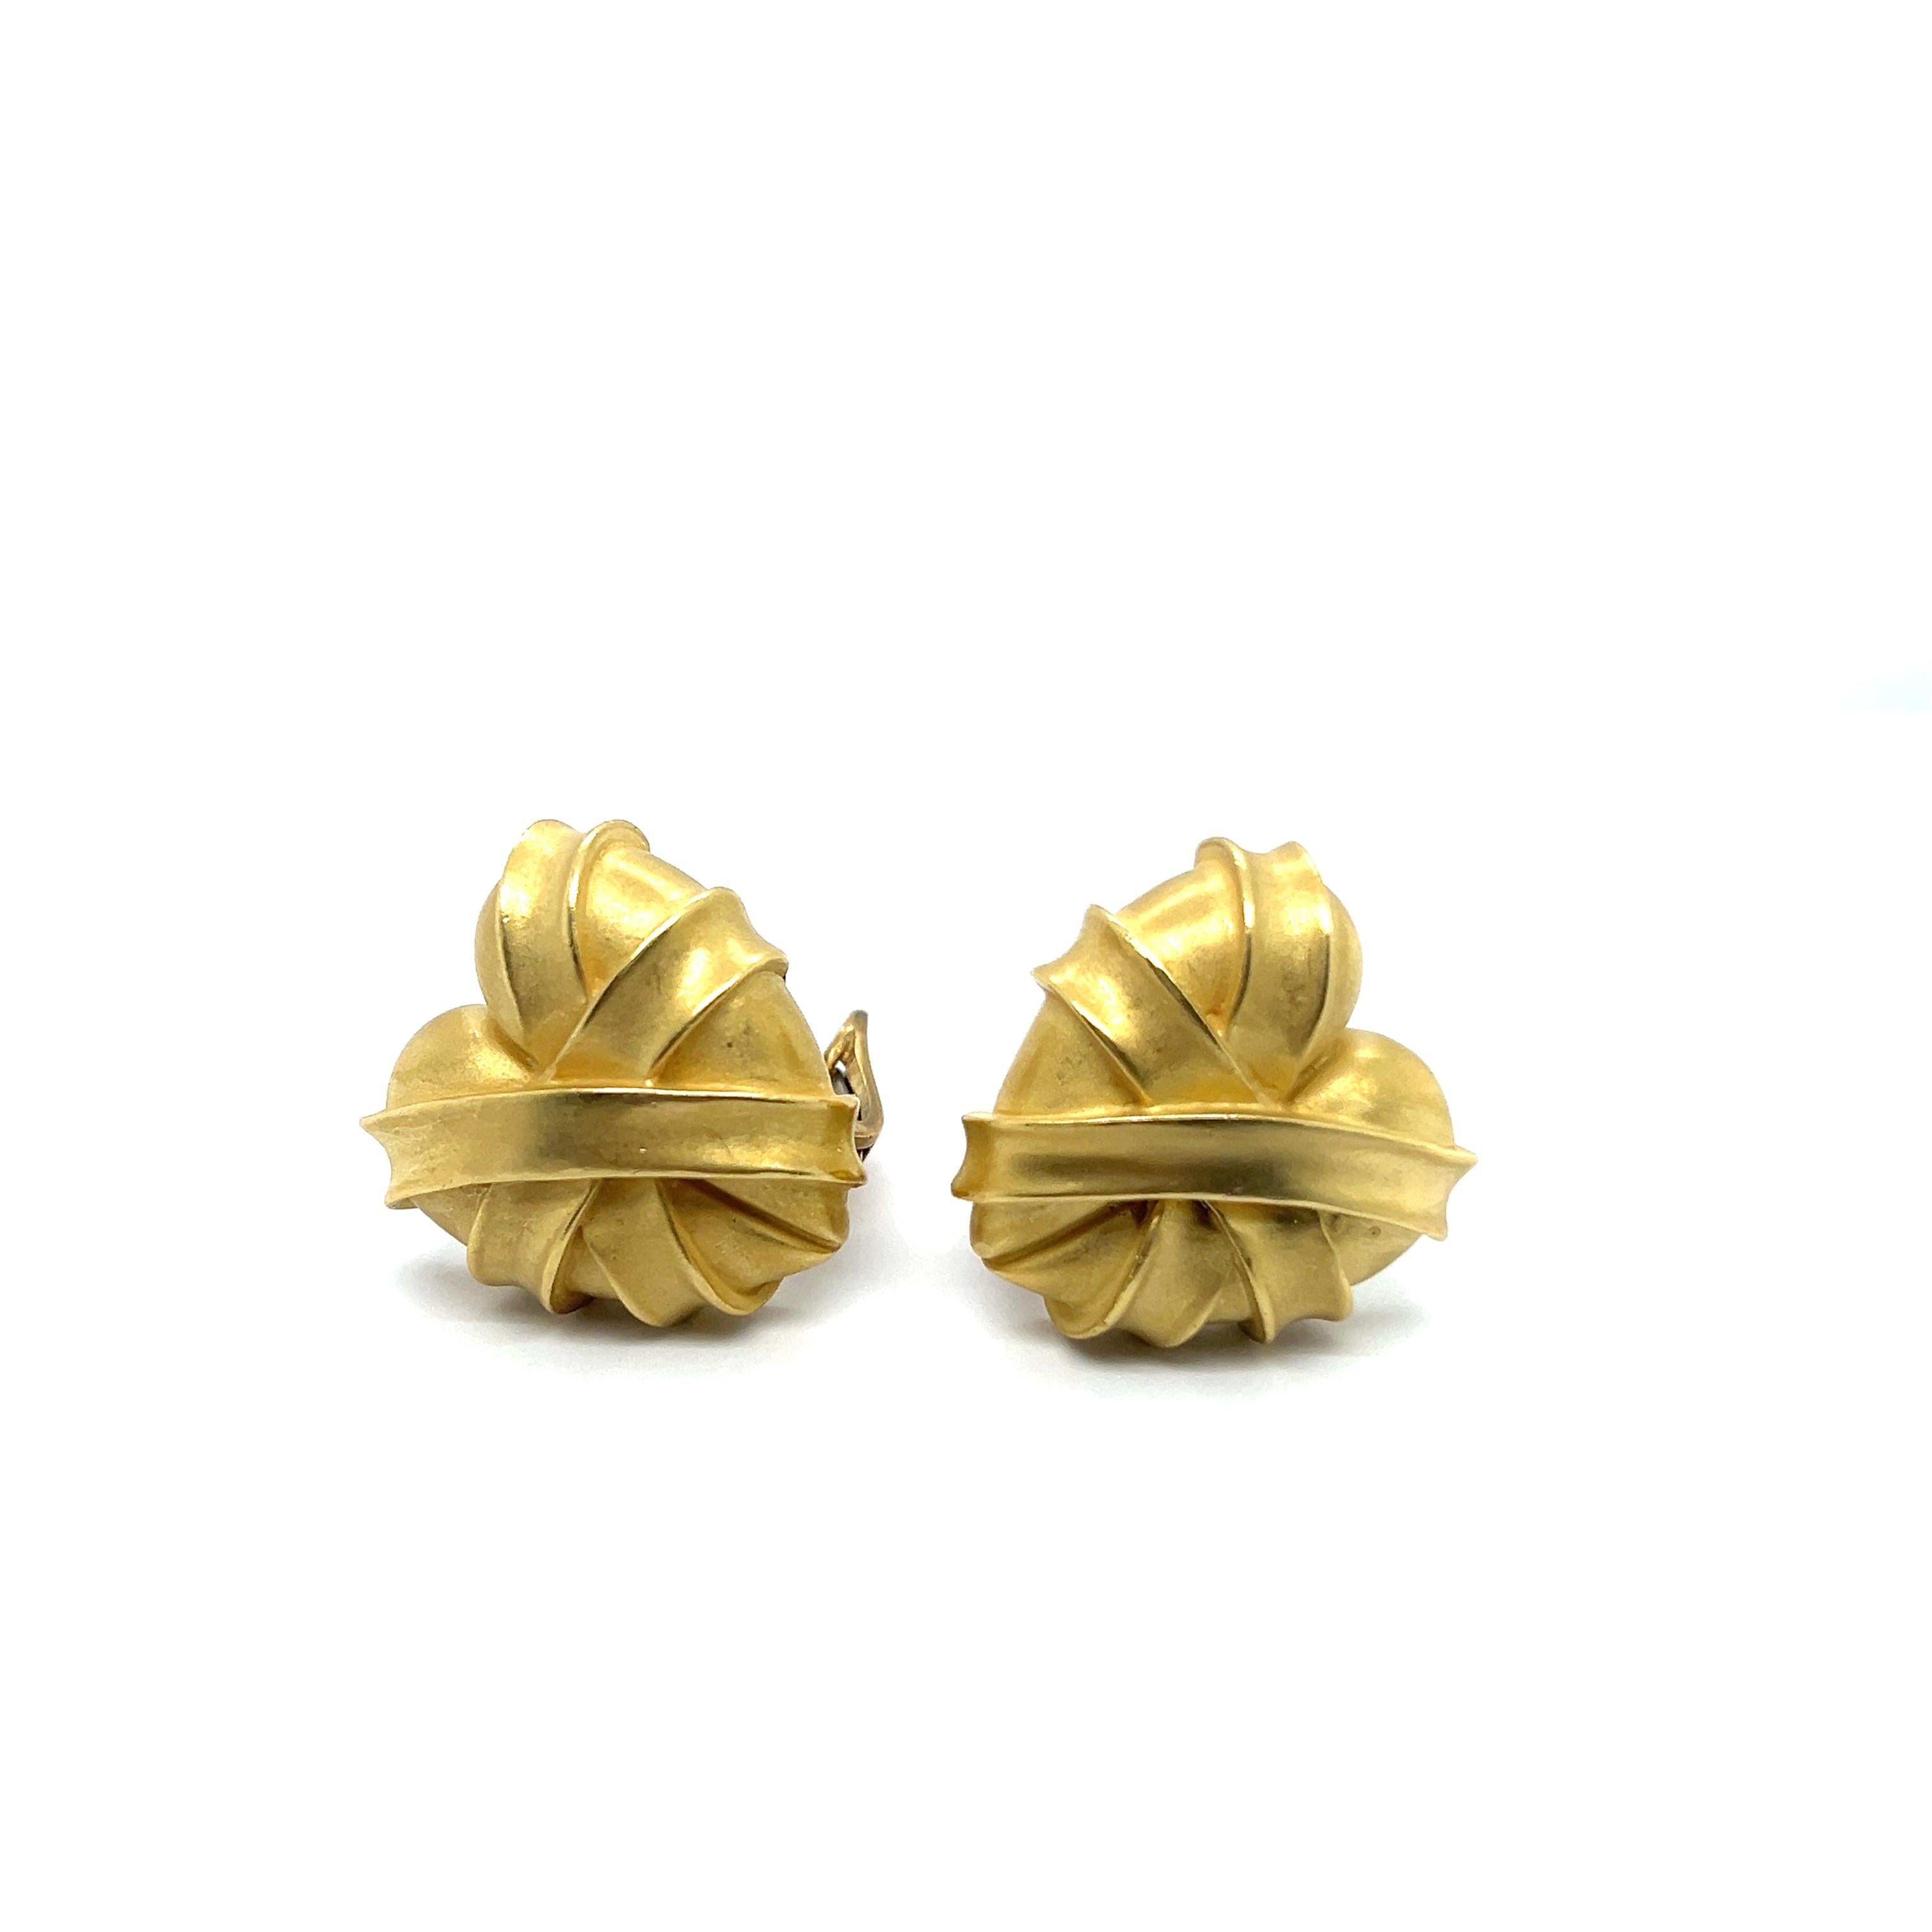 Heart-shaped Earrings in 18 Karat Yellow Gold by Kieselstein-Cord For Sale 8